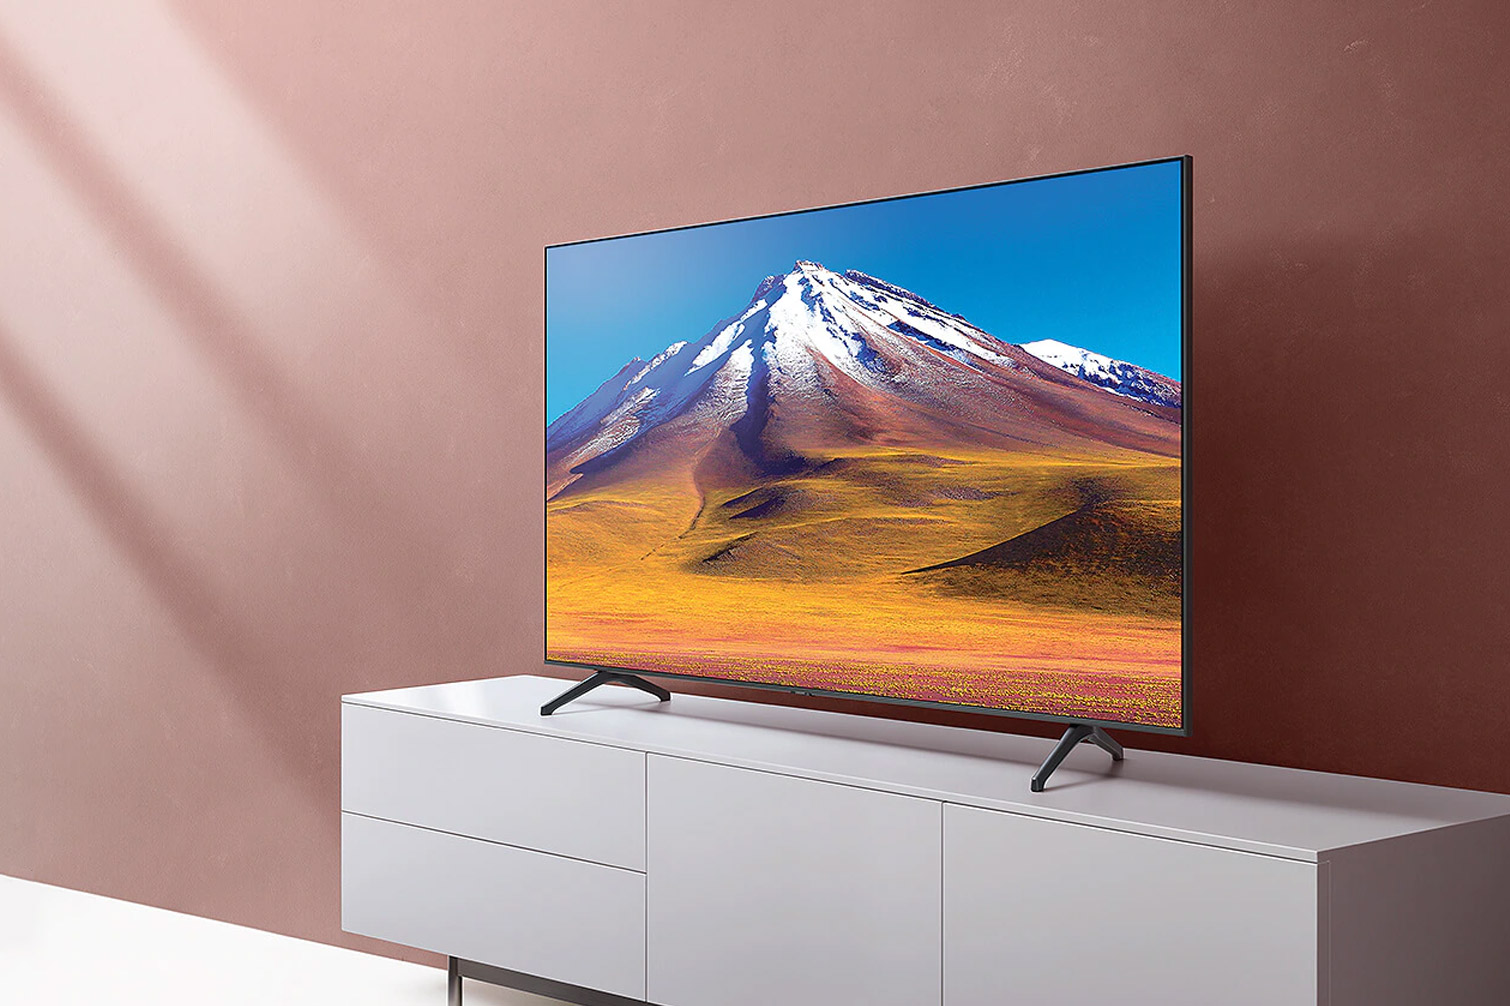 Review Tivi Samsung 43 inch UA43TU6900KXXV hiện đại – Lựa chọn giá rẻ mà chất lượng